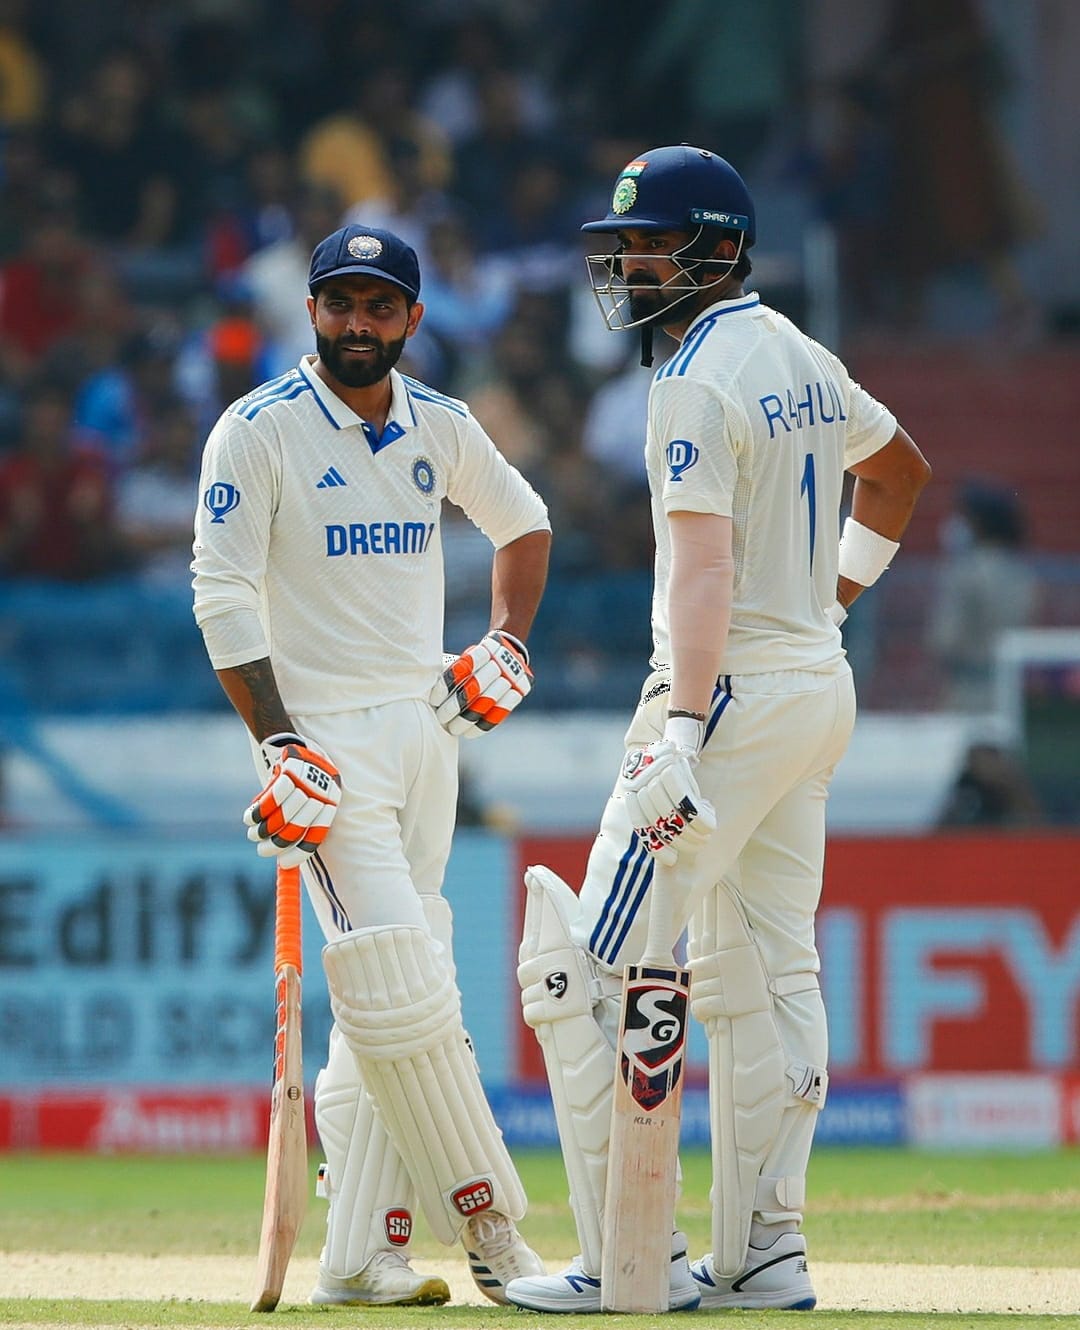 India vs England: Rahul’s Brilliance and Jadeja’s Impact on Lead